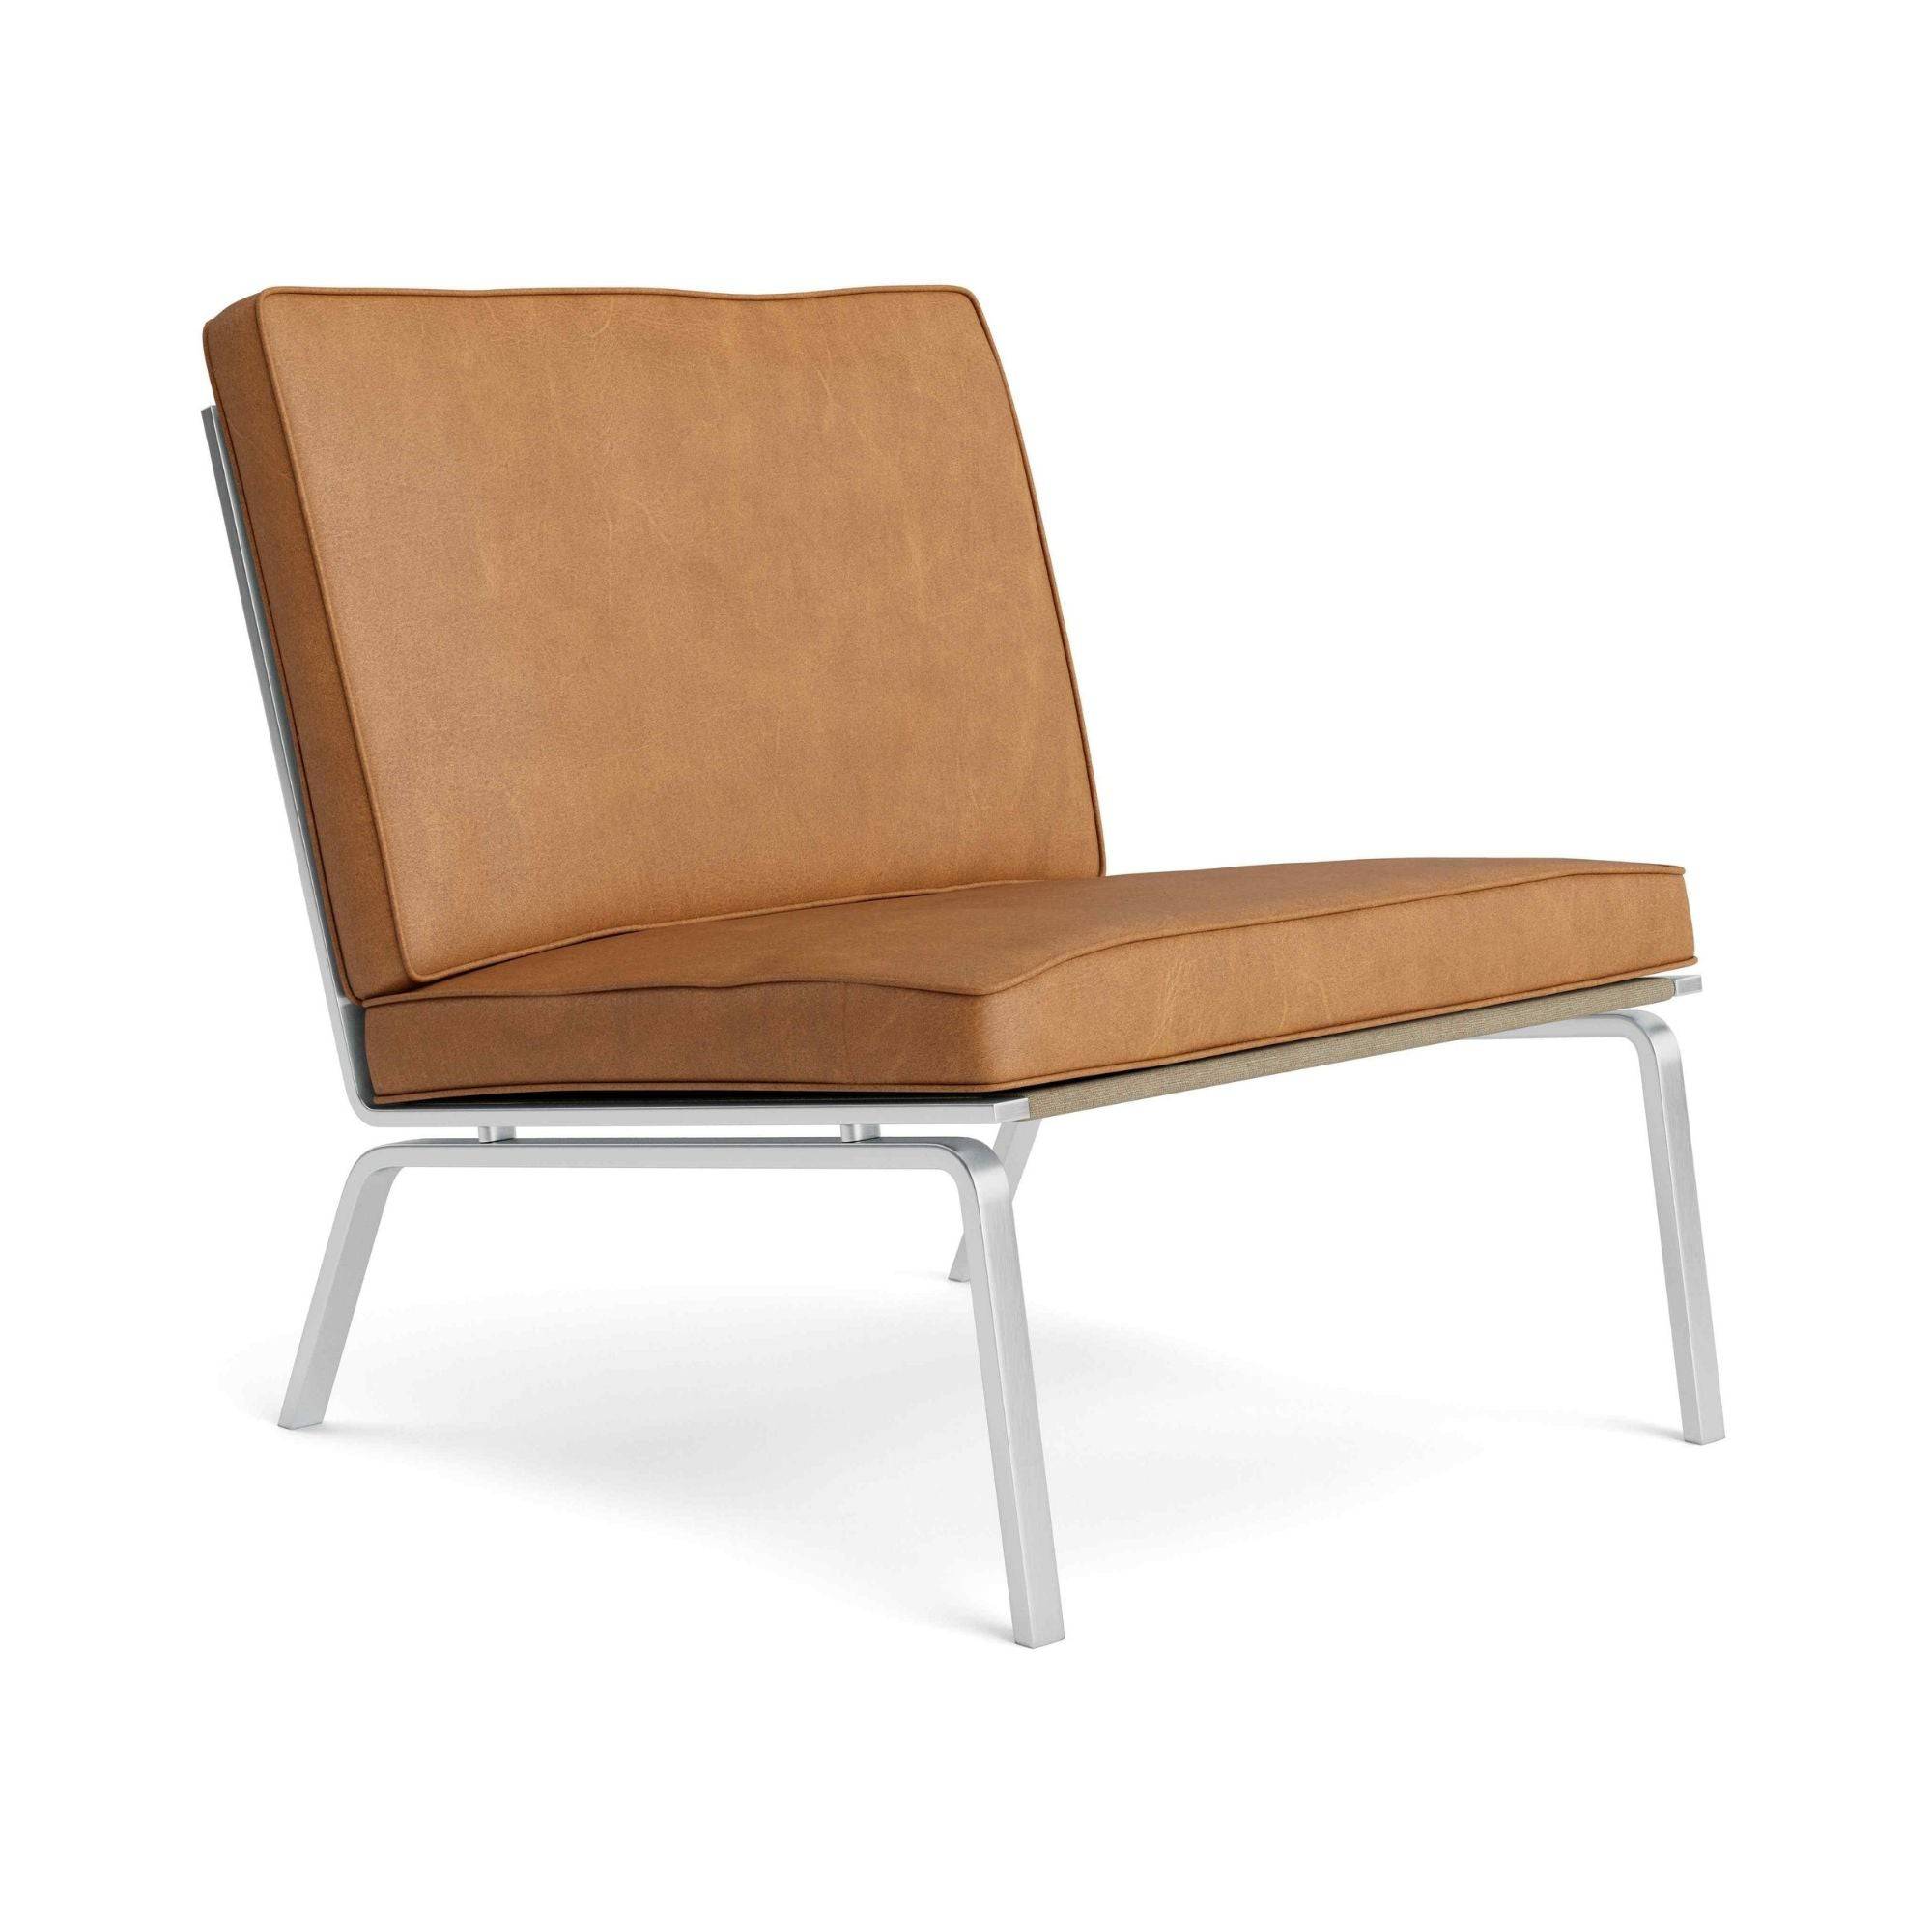 Man Lounge Chair - Cuir